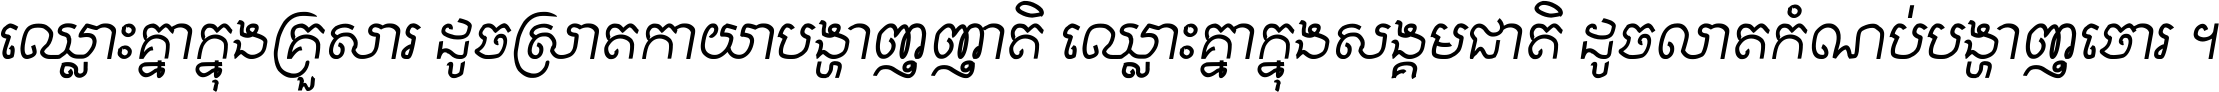 Kh Baphnom Dang Chenda Italic